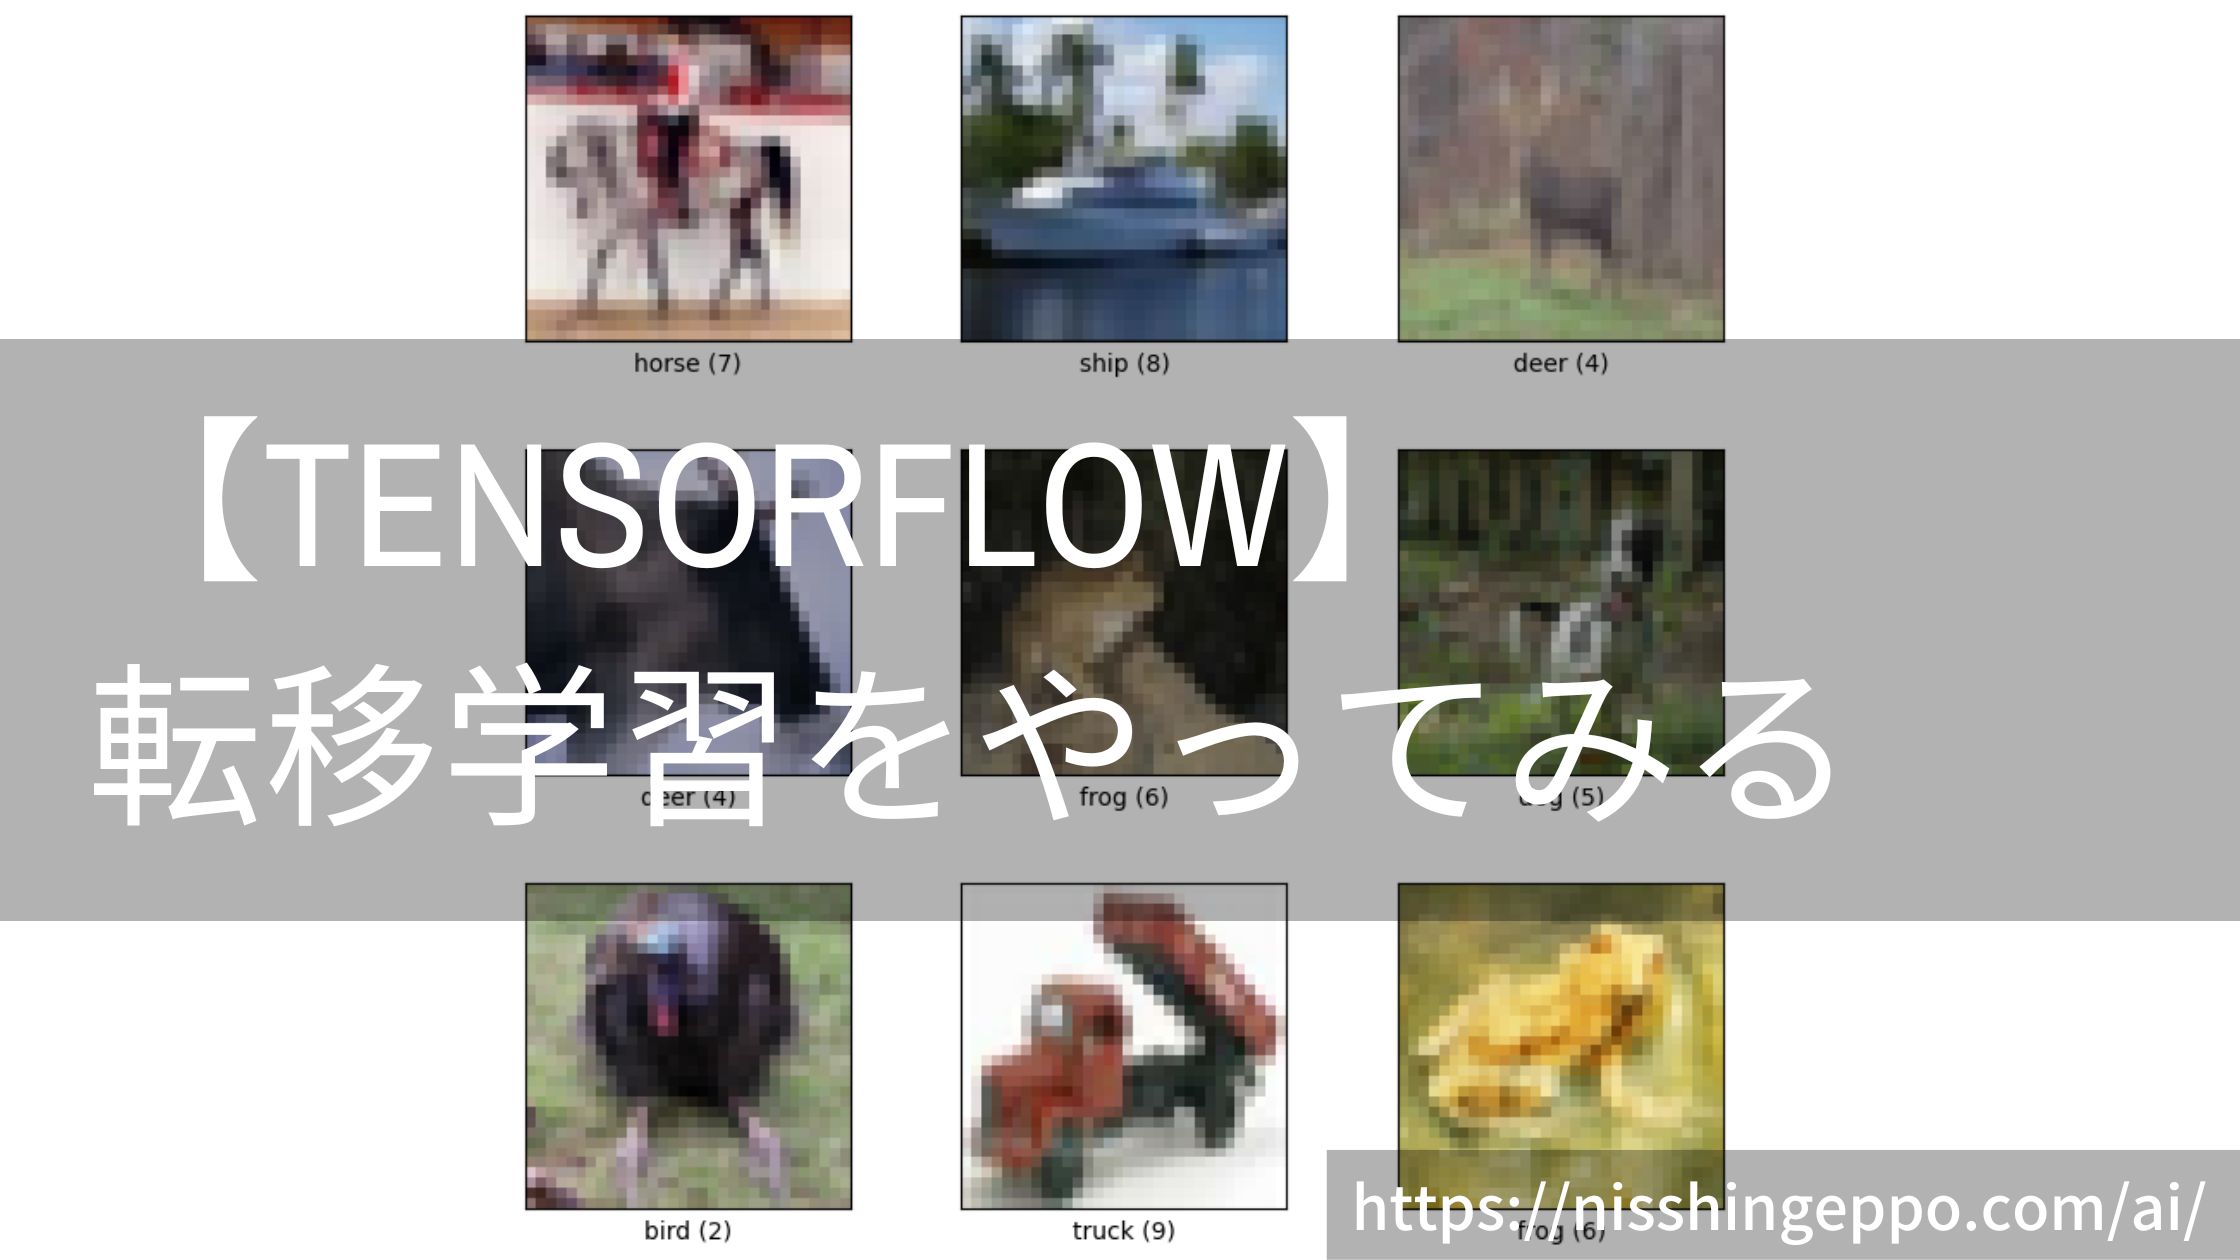 【TensorFlow】転移学習を使ったcifer10の画像分類をやってみる